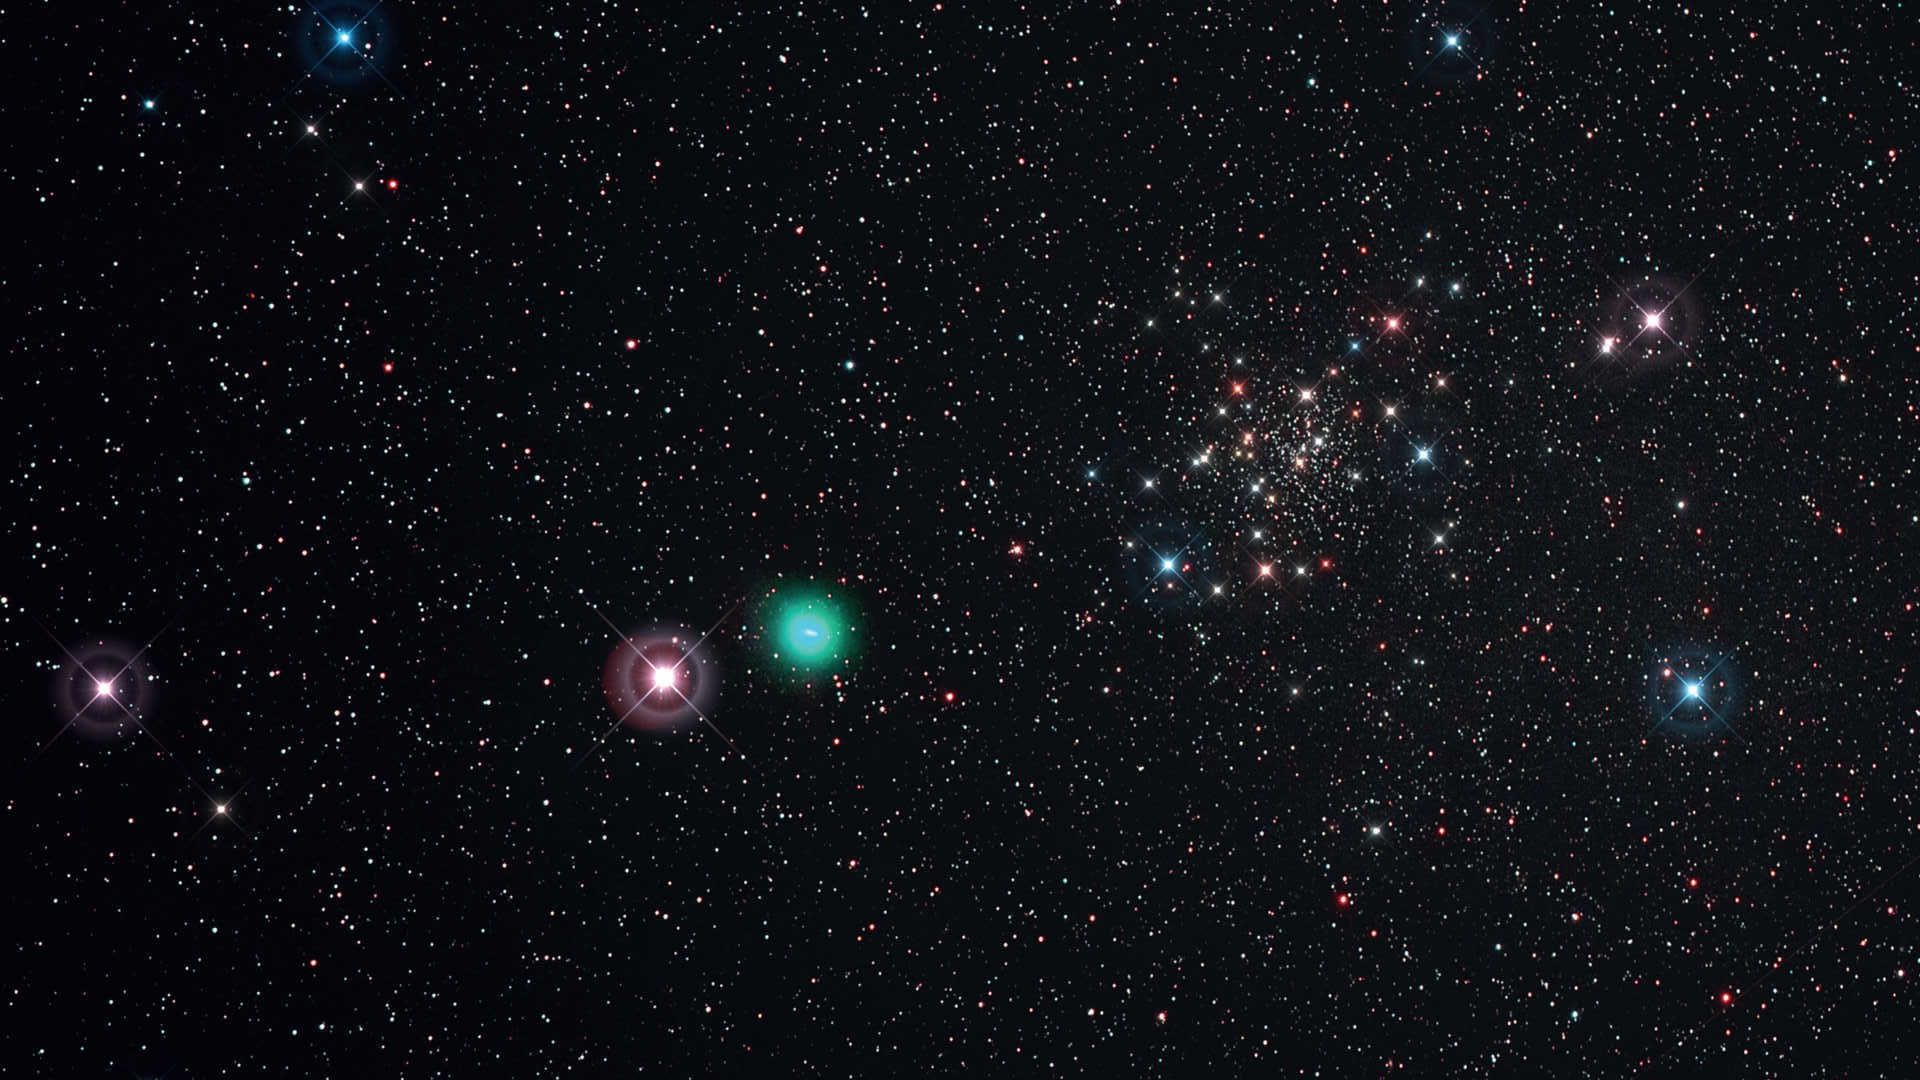 La notte limpida del 21/05/2015 ha permesso di riprendere la cometa C/2014 Q2 (Lovejoy) mentre transitava in prossimità dell’ammasso NGC188. Per questa immagine è stato usato un Telephoto Lens/Scope di Kowa (lunghezza focale: 350 mm, F/4) su una Canon 6D (modificata Hα) con filtro UHC-S. La somma è data da sei scatti con tempo di esposizione di 450 secondi ciascuno (ISO 800; tempo di esposizione totale: 45 minuti). Elaborazione con DeepSkyStacker e Photoshop; spikes aggiunti solo per motivi estetici. U. Dittler